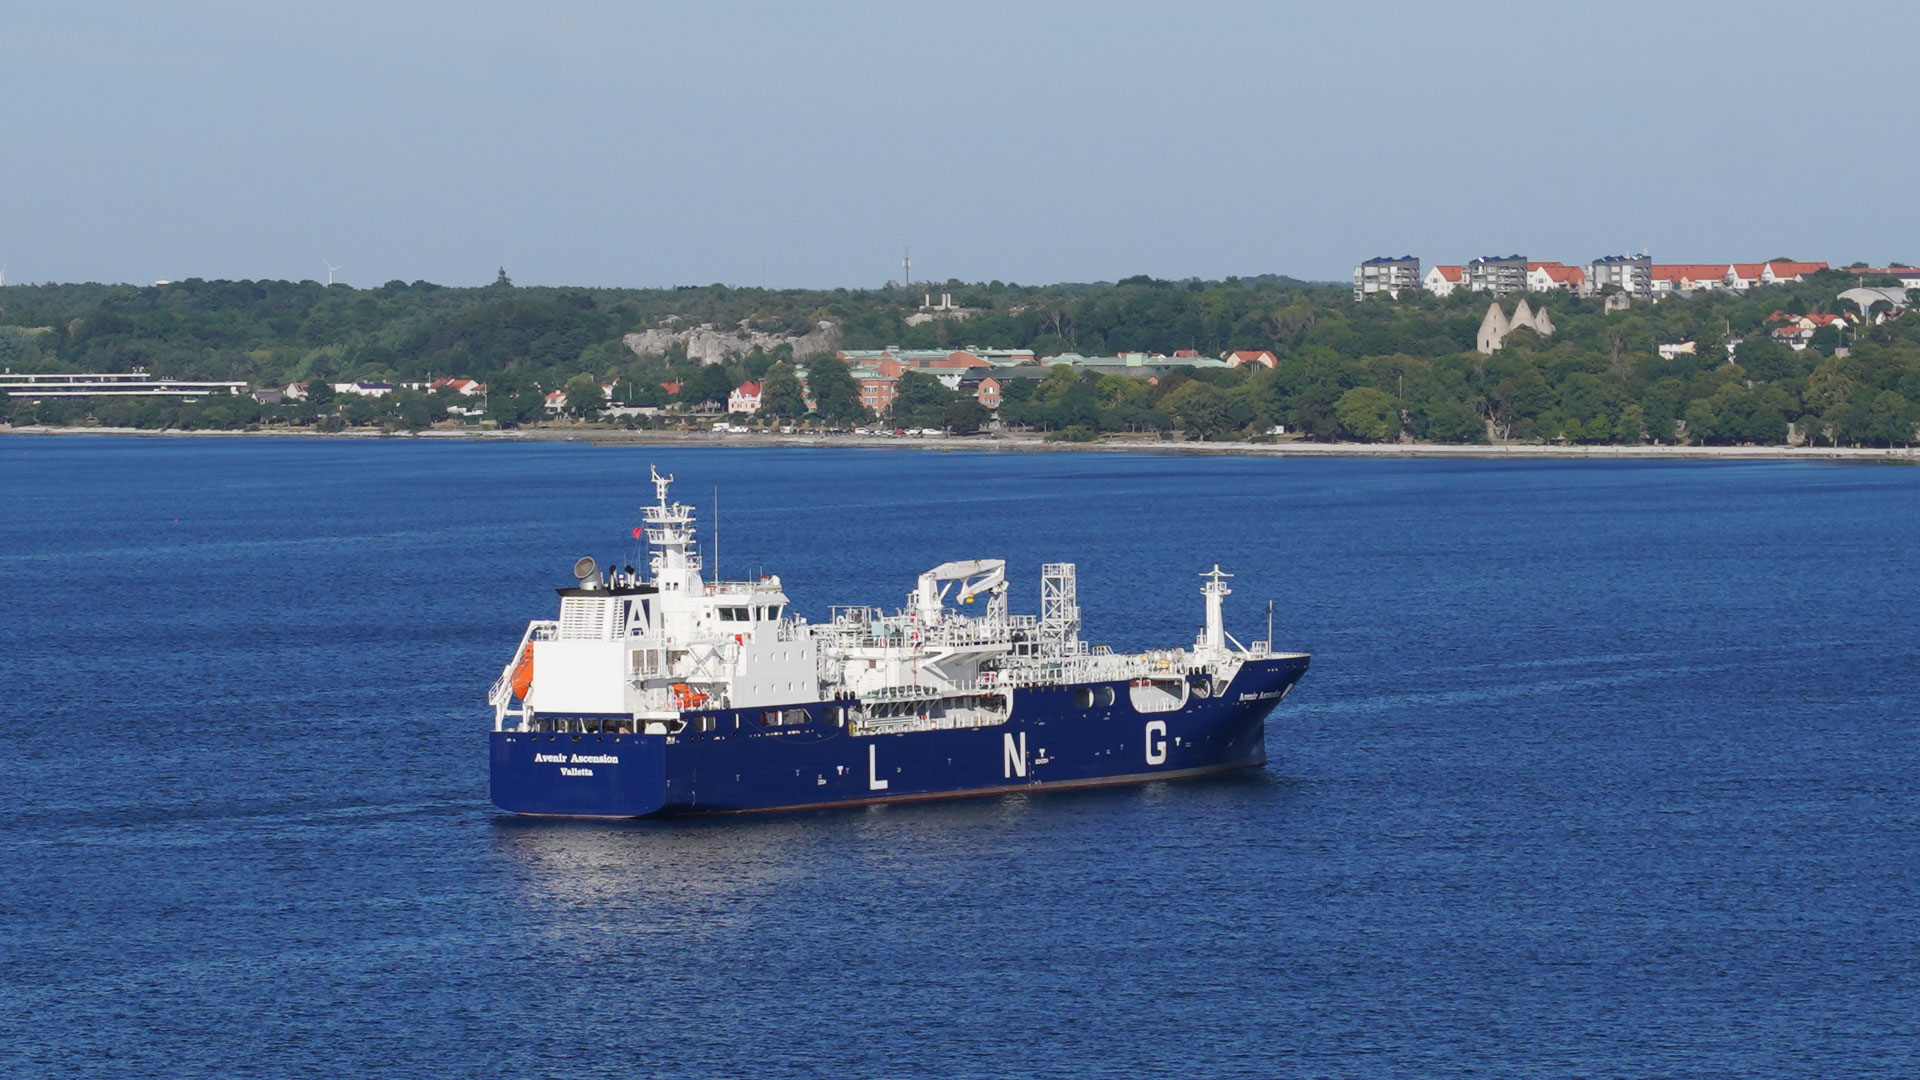 Das LNG Tankschiff Avenir Ascension ist vor dem Hafen von Visby zu sehen.